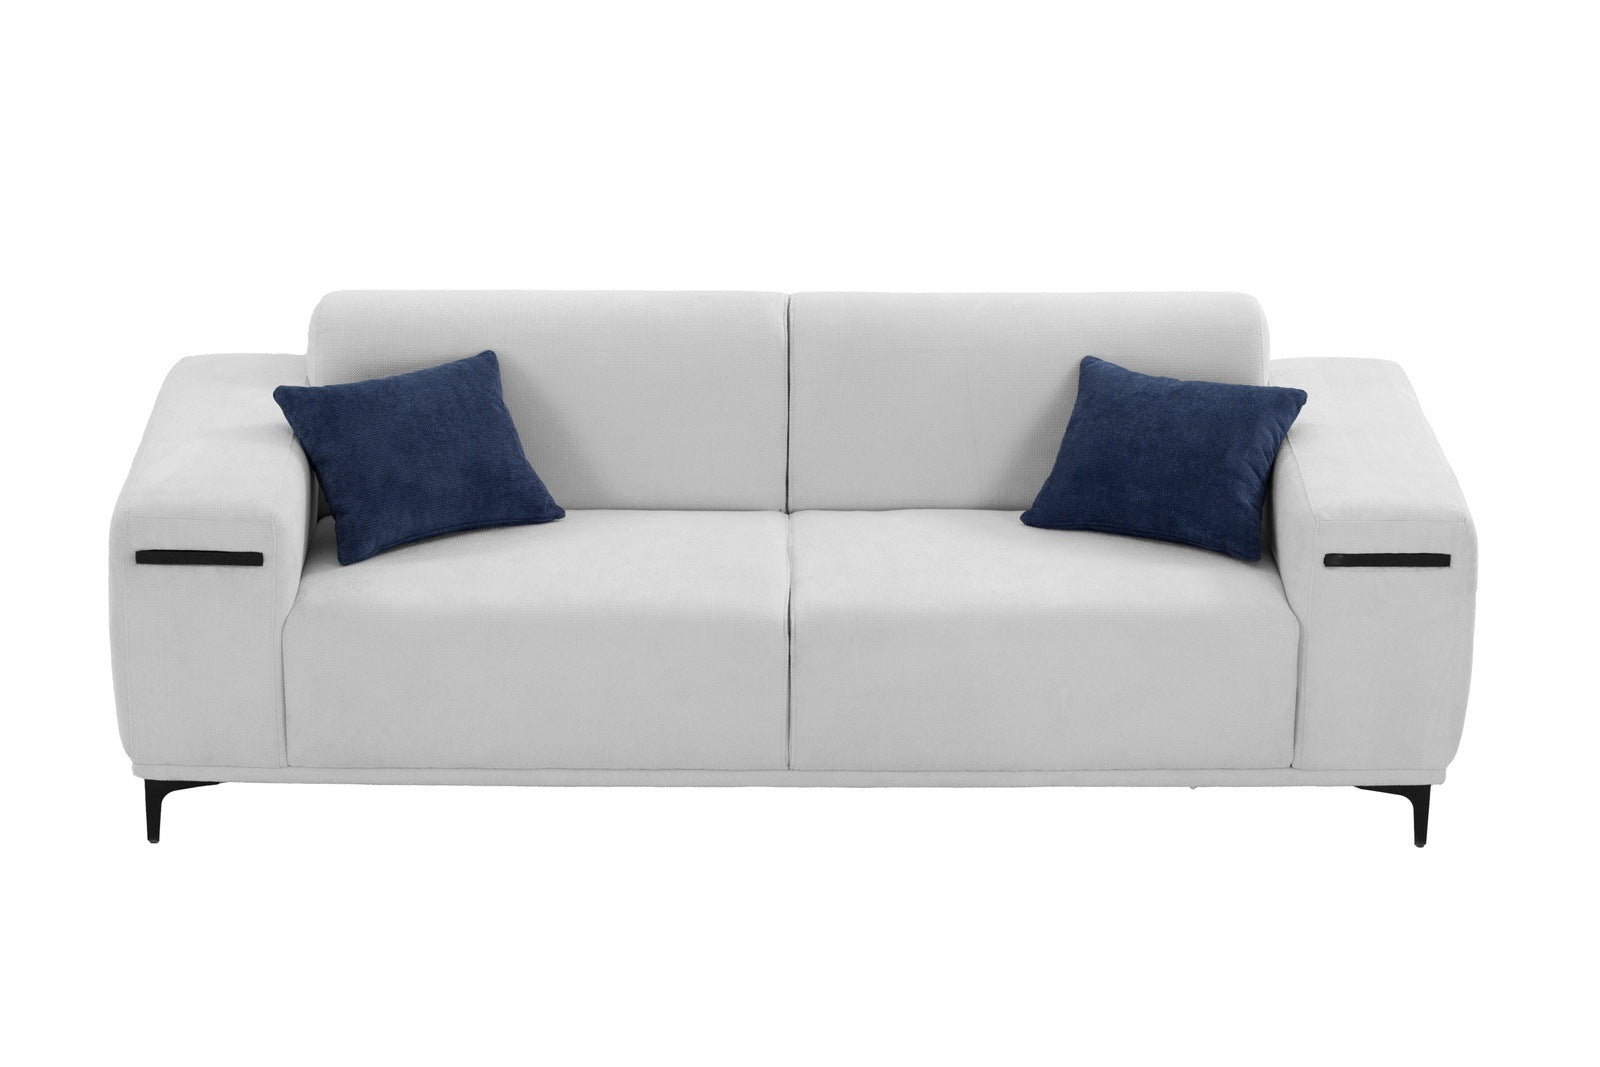 Modern Upholstered Sofa in Beige Linen